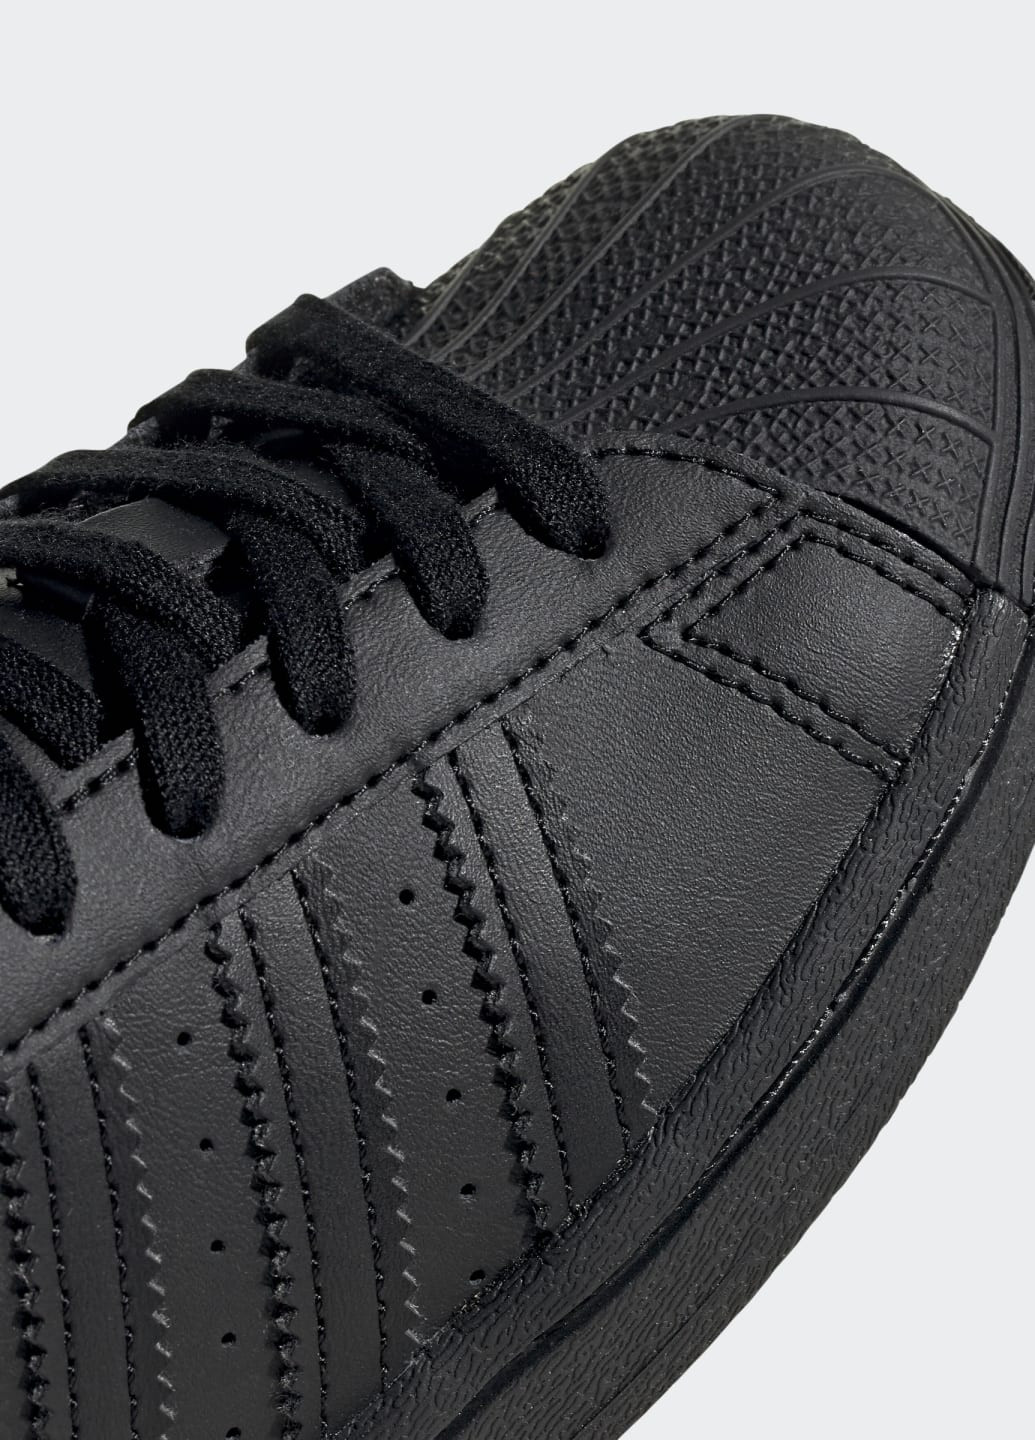 Черные кроссовки superstar adidas